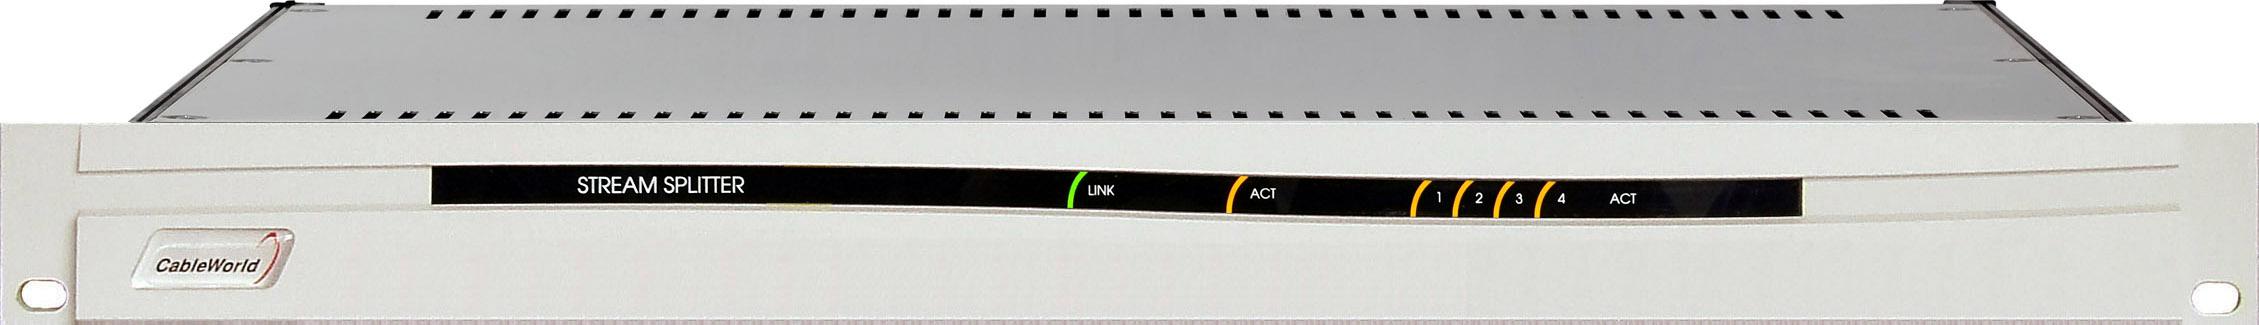 NAT Network Address Translation (hálózati címfordítás) CW-4516 Stream Splitter 4/16-os fizikai/logikai transport stream elosztó A digitális televízió rendszerek köztük a kábelte levízió fejállomások